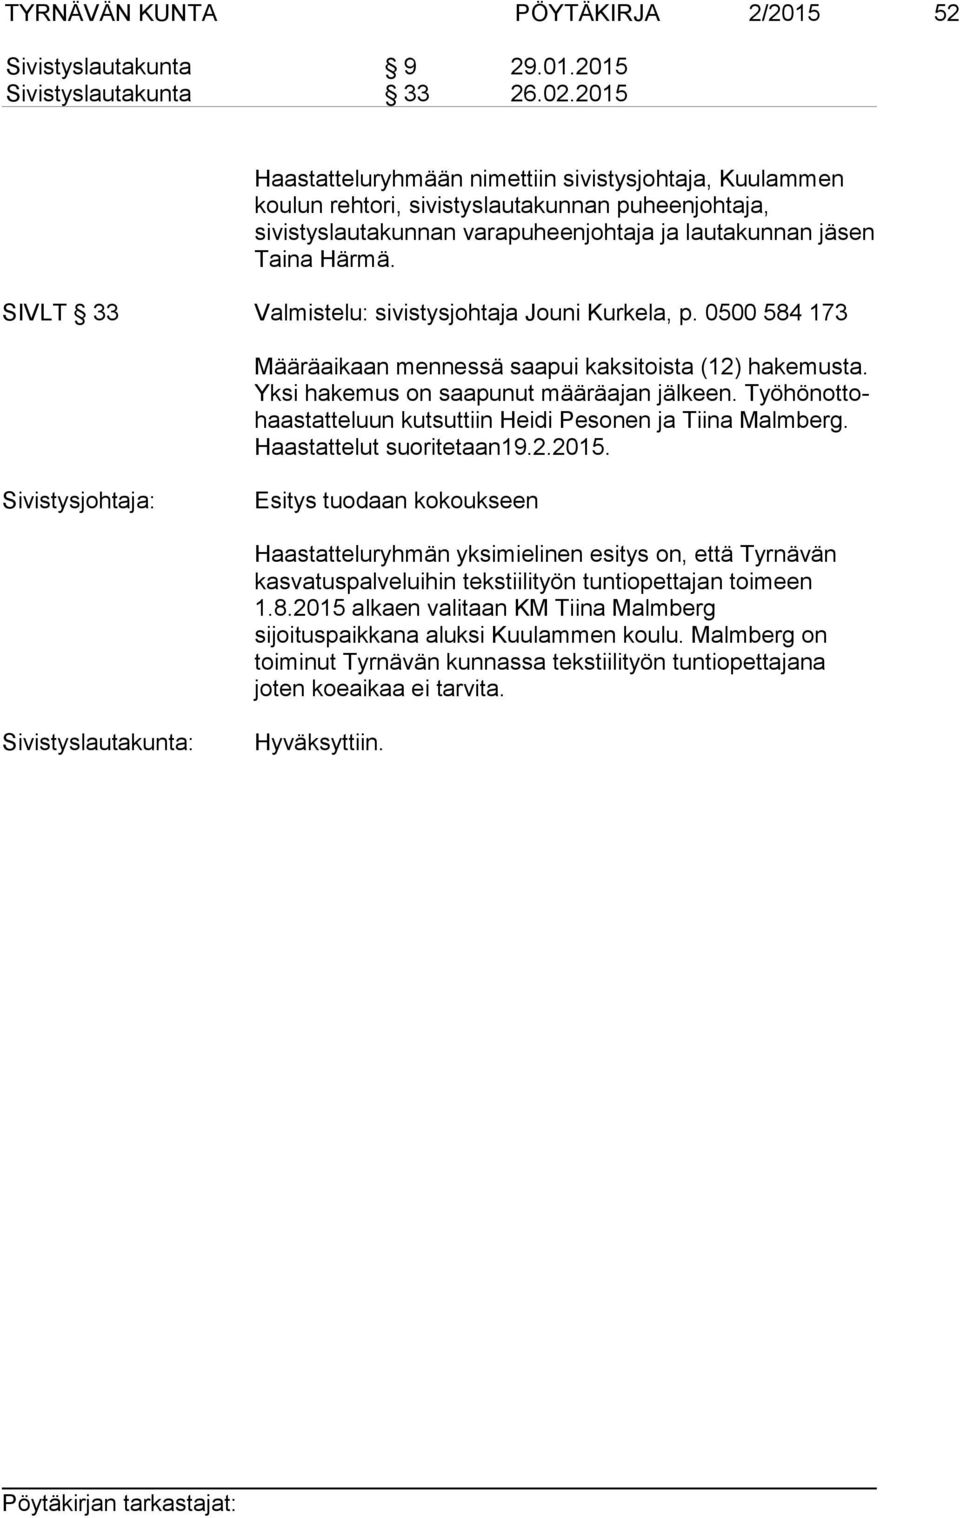 SIVLT 33 Valmistelu: sivistysjohtaja Jouni Kurkela, p. 0500 584 173 Määräaikaan mennessä saapui kaksitoista (12) hakemusta. Yk si hakemus on saapunut määräajan jälkeen.